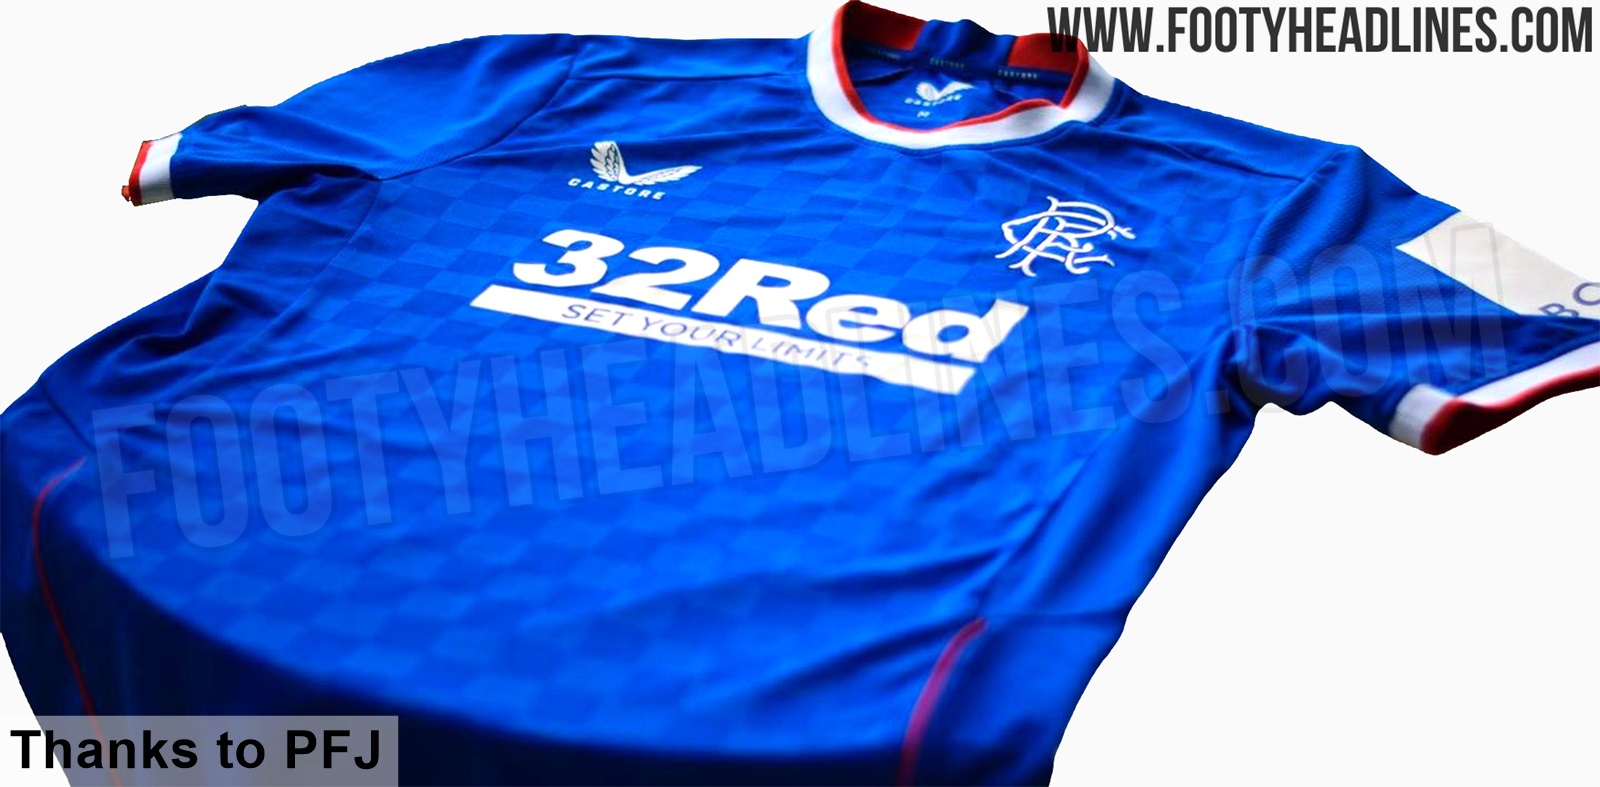 Rangers 23-24 Home Kit Released - Footy Headlines